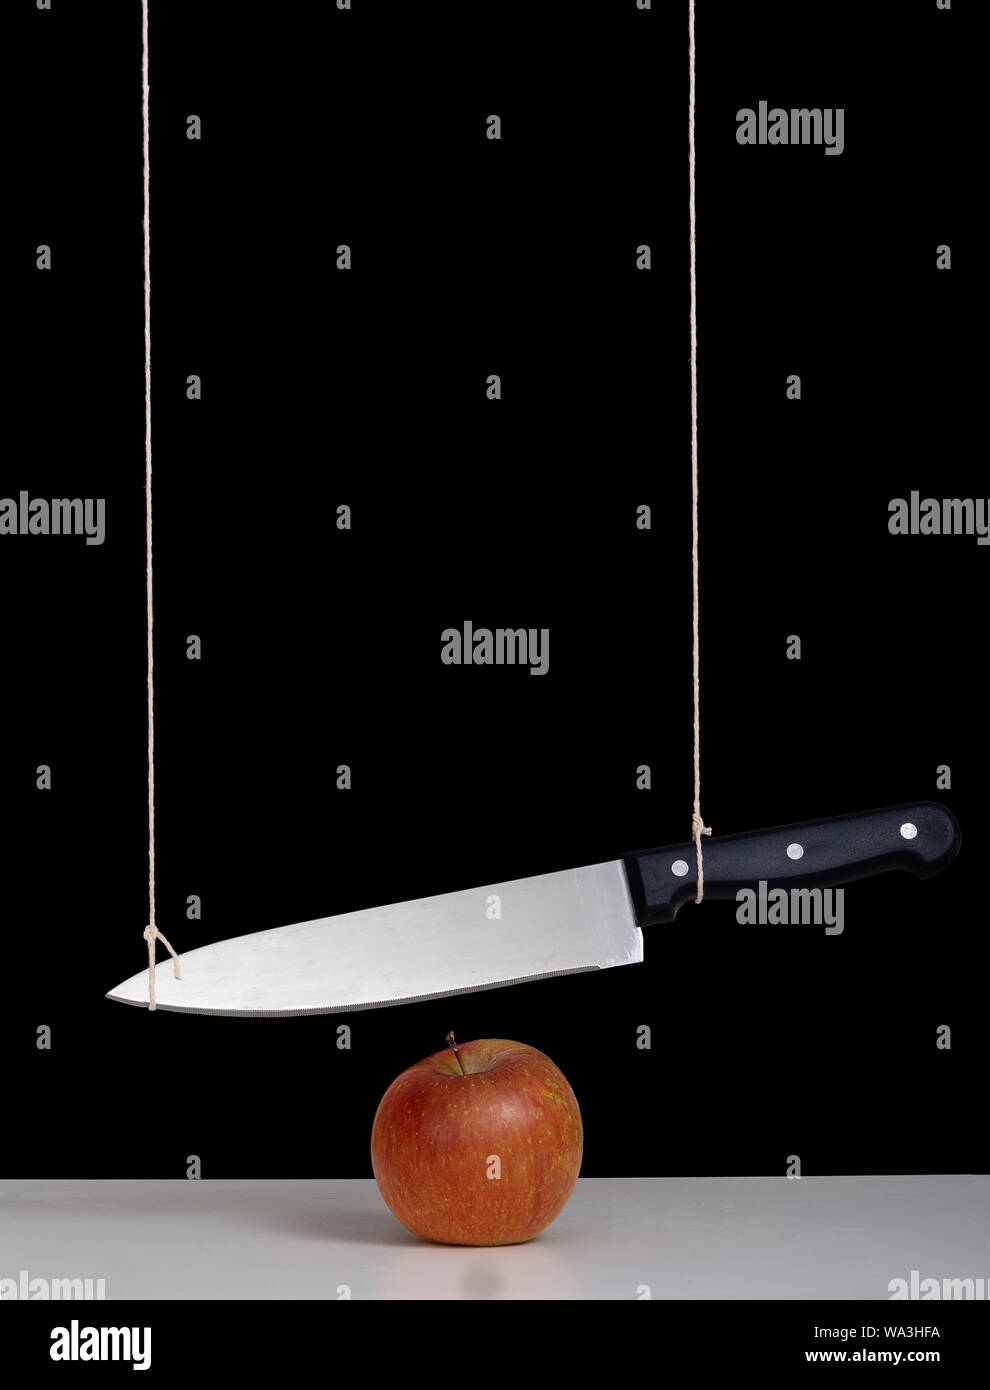 Damoklesschwert Bedrohung, Gefahr, Konzept, Metapher - großes Messer gebunden und über Apple ausgesetzt. Stillleben mit schwarzem Hintergrund. Stockfoto